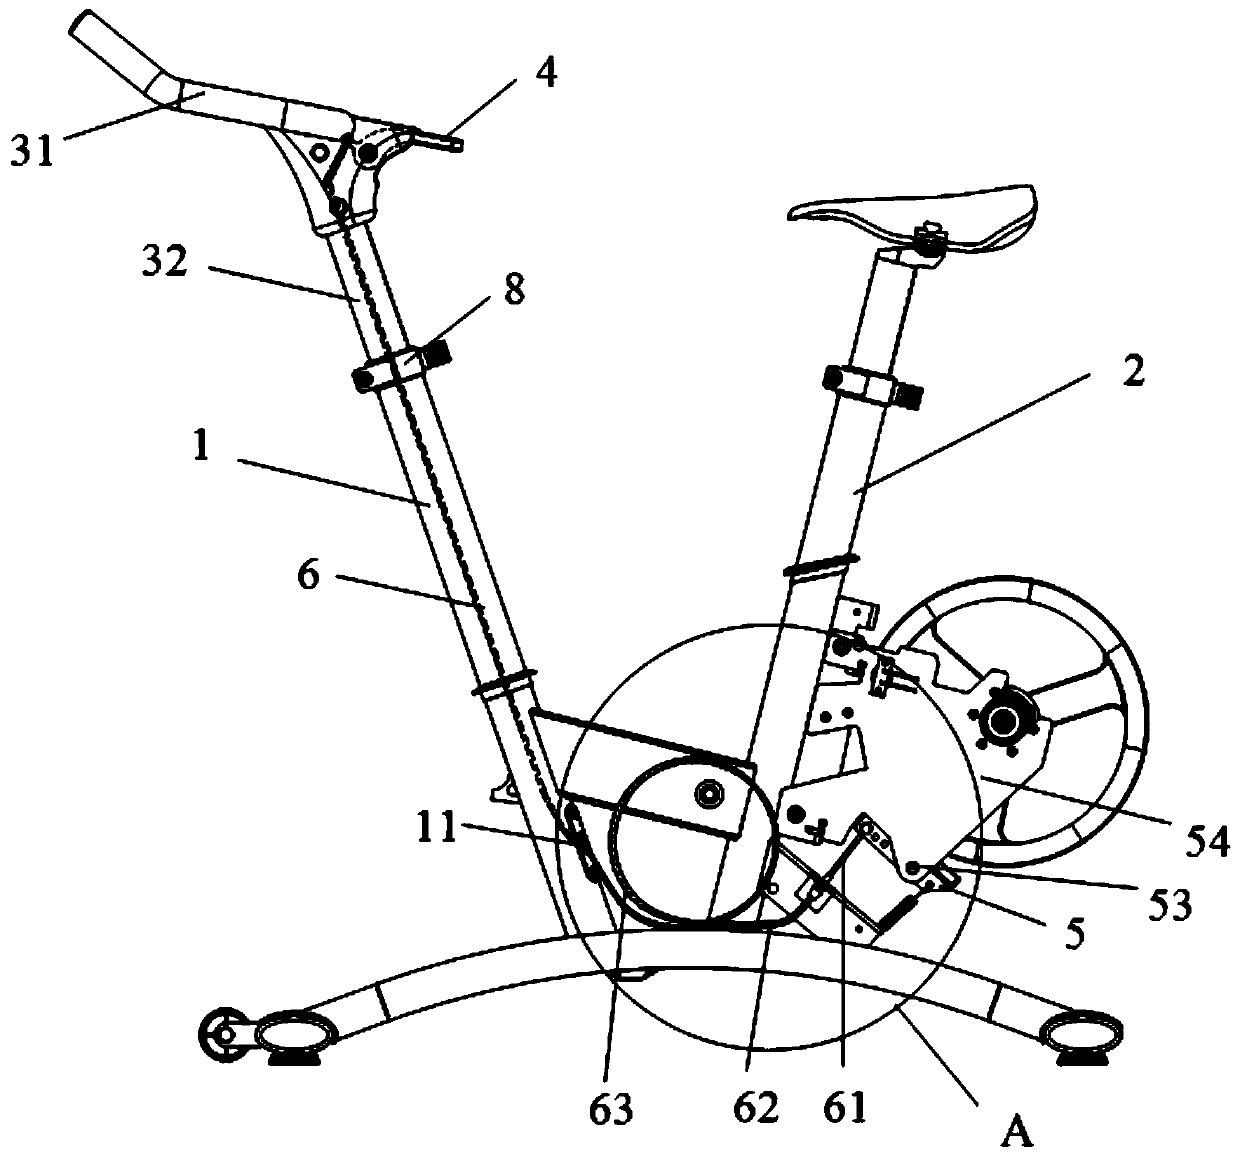 Braking device for exercise bike